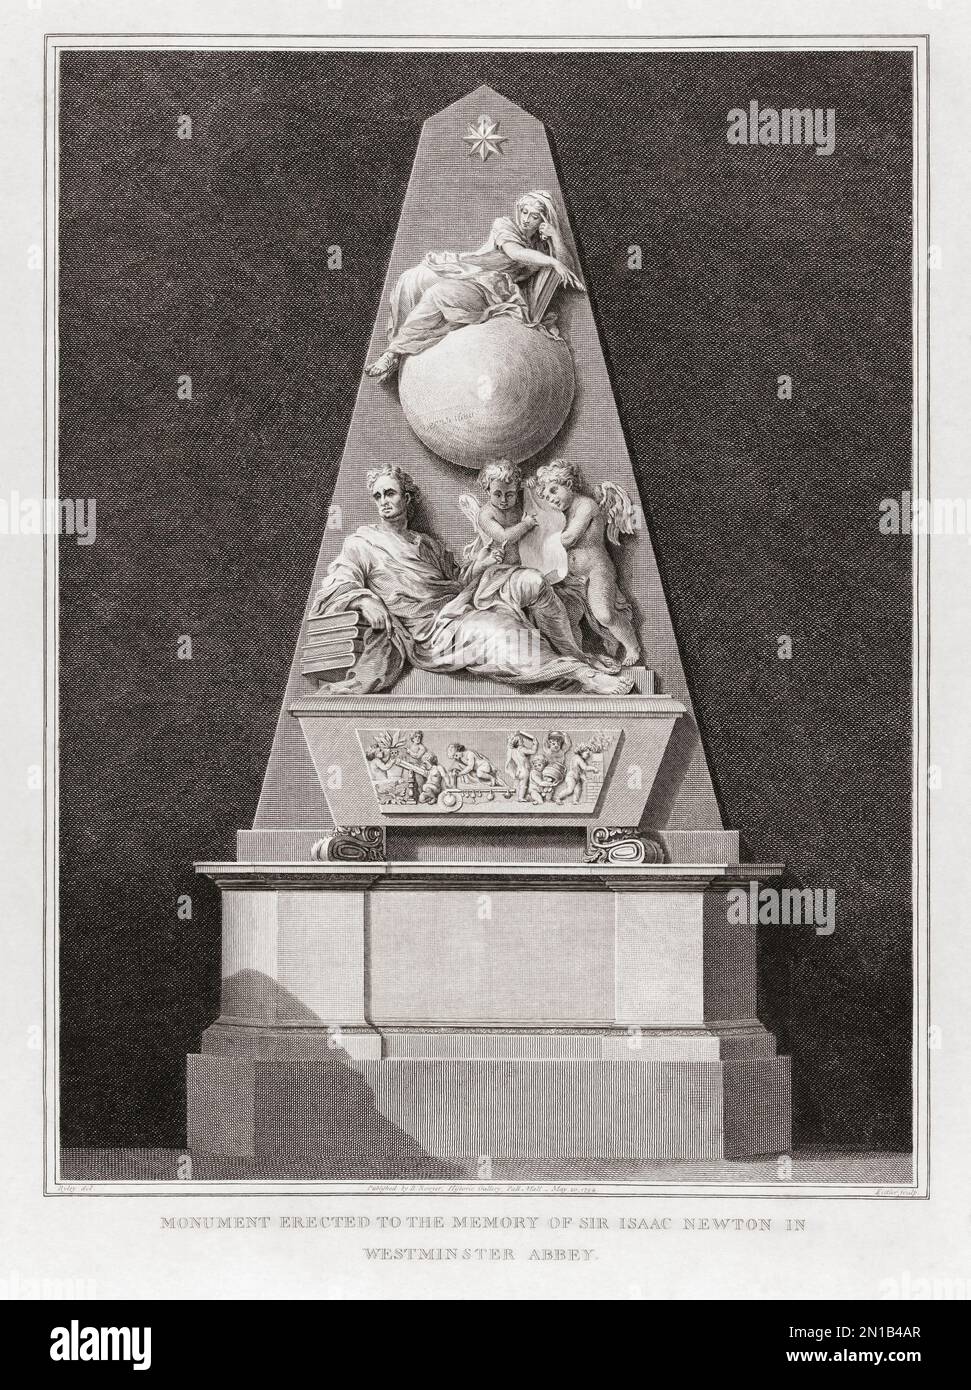 Denkmal für den englischen Mathematiker Sir Isaac Newton in Westminster Abbey, London. Das Denkmal wurde vom Architekten William Kent entworfen und von Michael Rysbrack geformt. Nach einem Aufdruck, der ursprünglich in der historischen Galerie von Robert Bowyer gezeigt wurde und zwischen 1793 und 1806 veröffentlicht wurde. Stockfoto